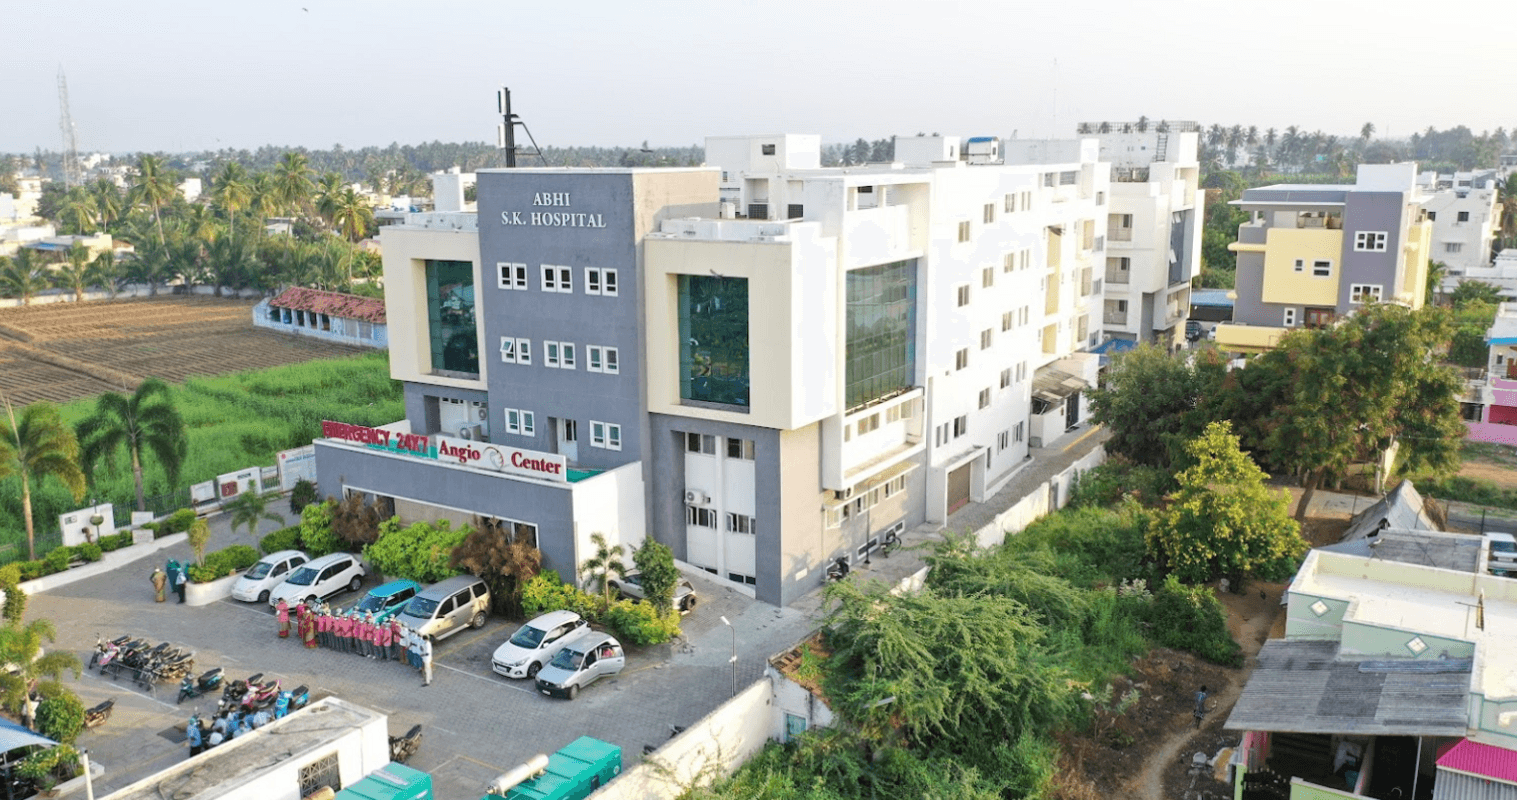 Abhi SK Hospital